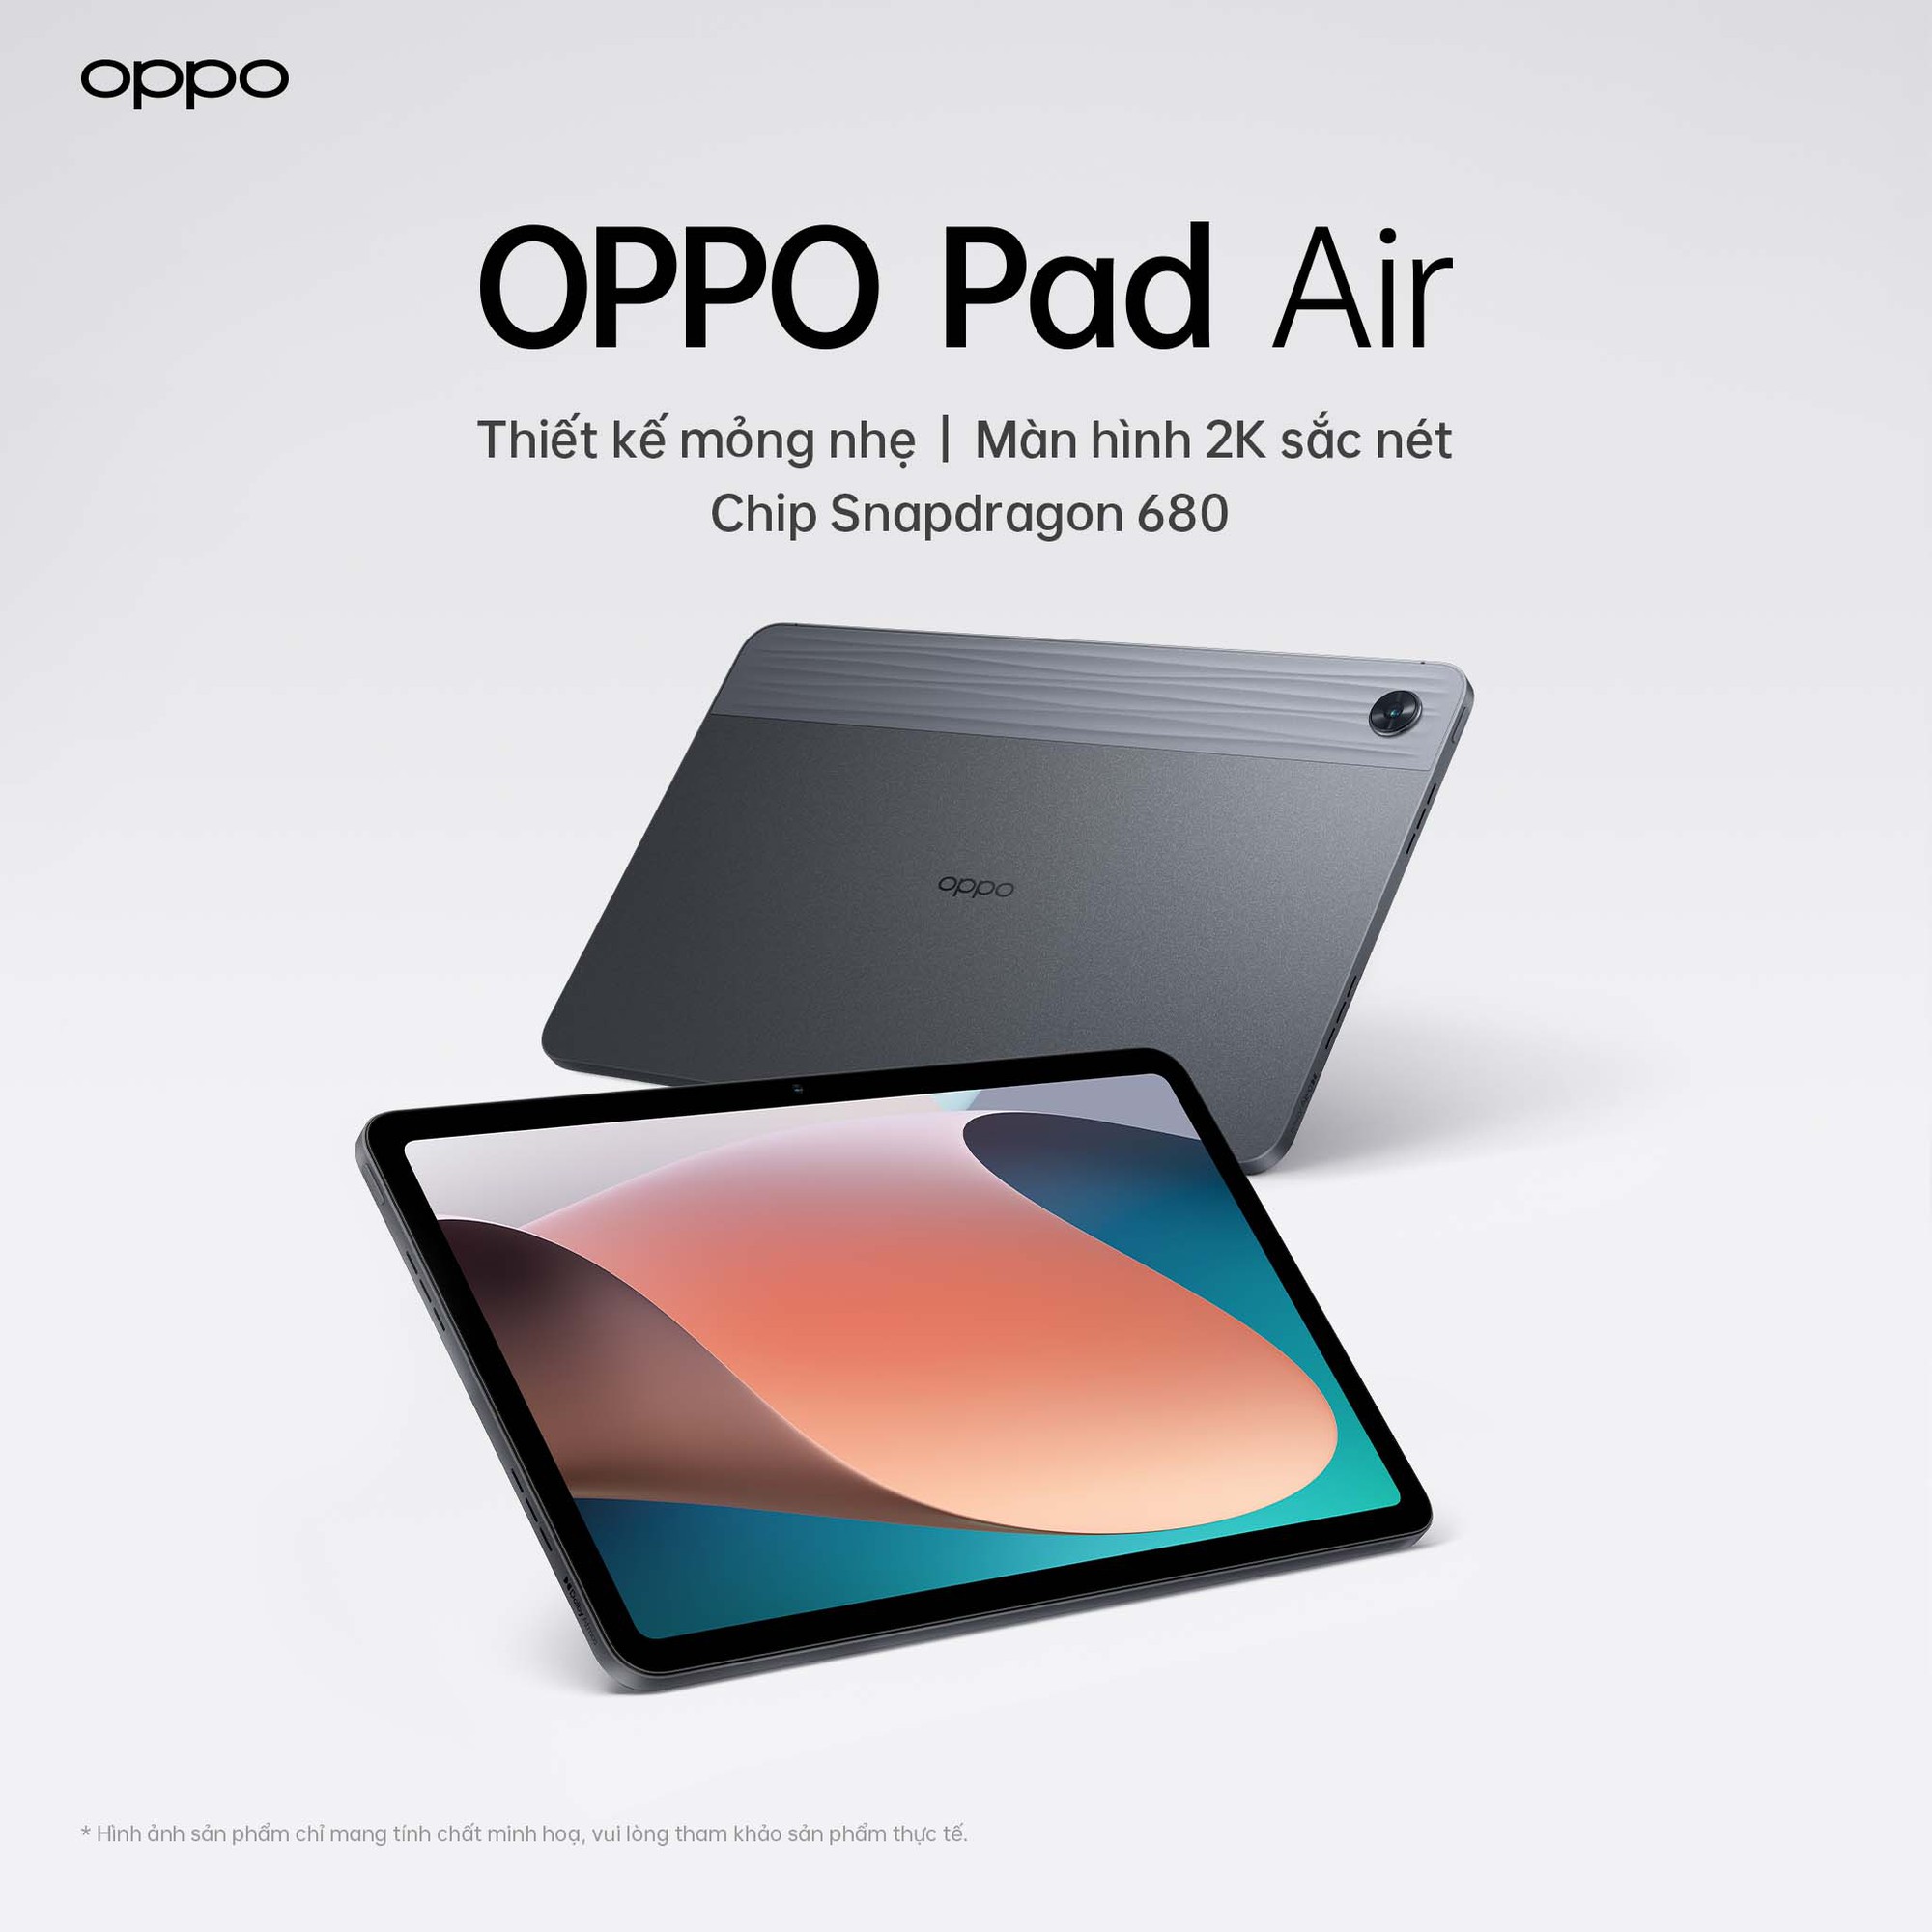 OPPO chuẩn bị ra mắt tablet đầu tiên tại Việt Nam, giá liệu có hấp dẫn? - ảnh 1